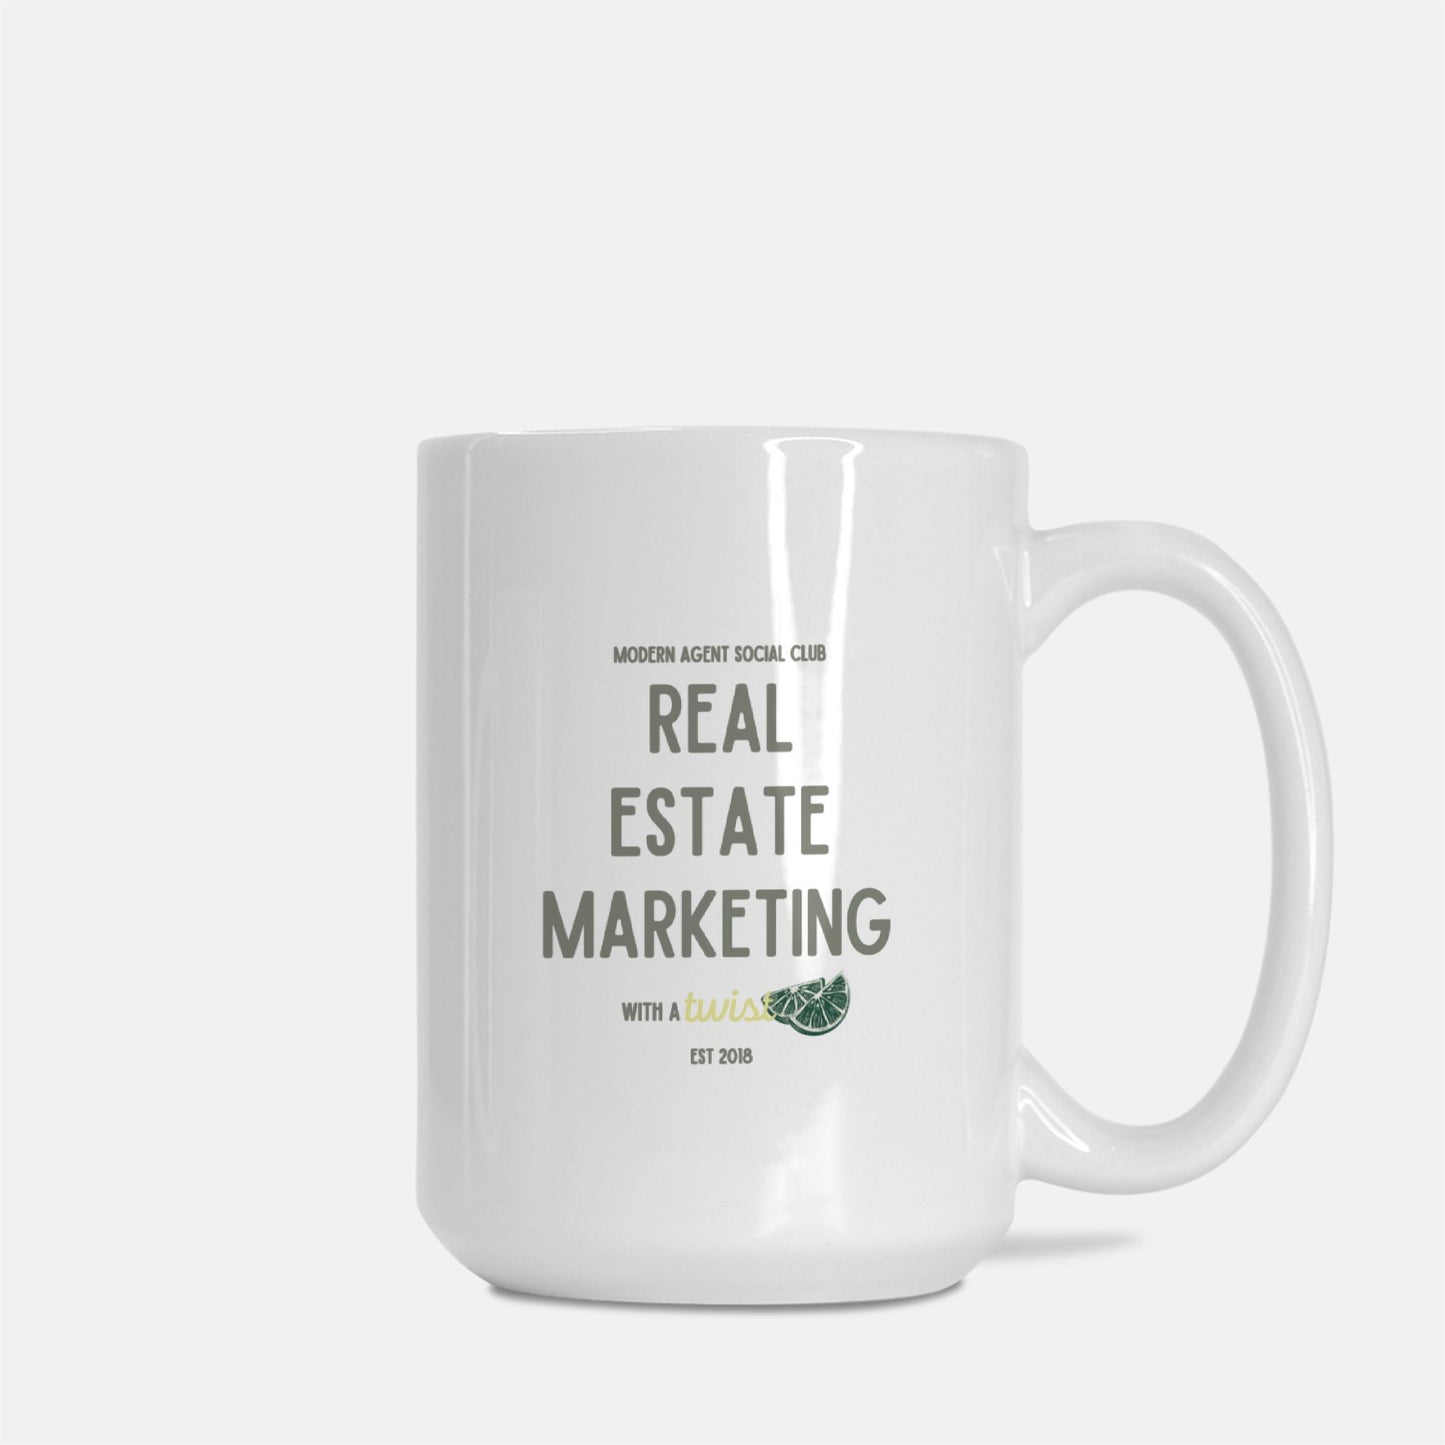 Marketing with a Twist Mug